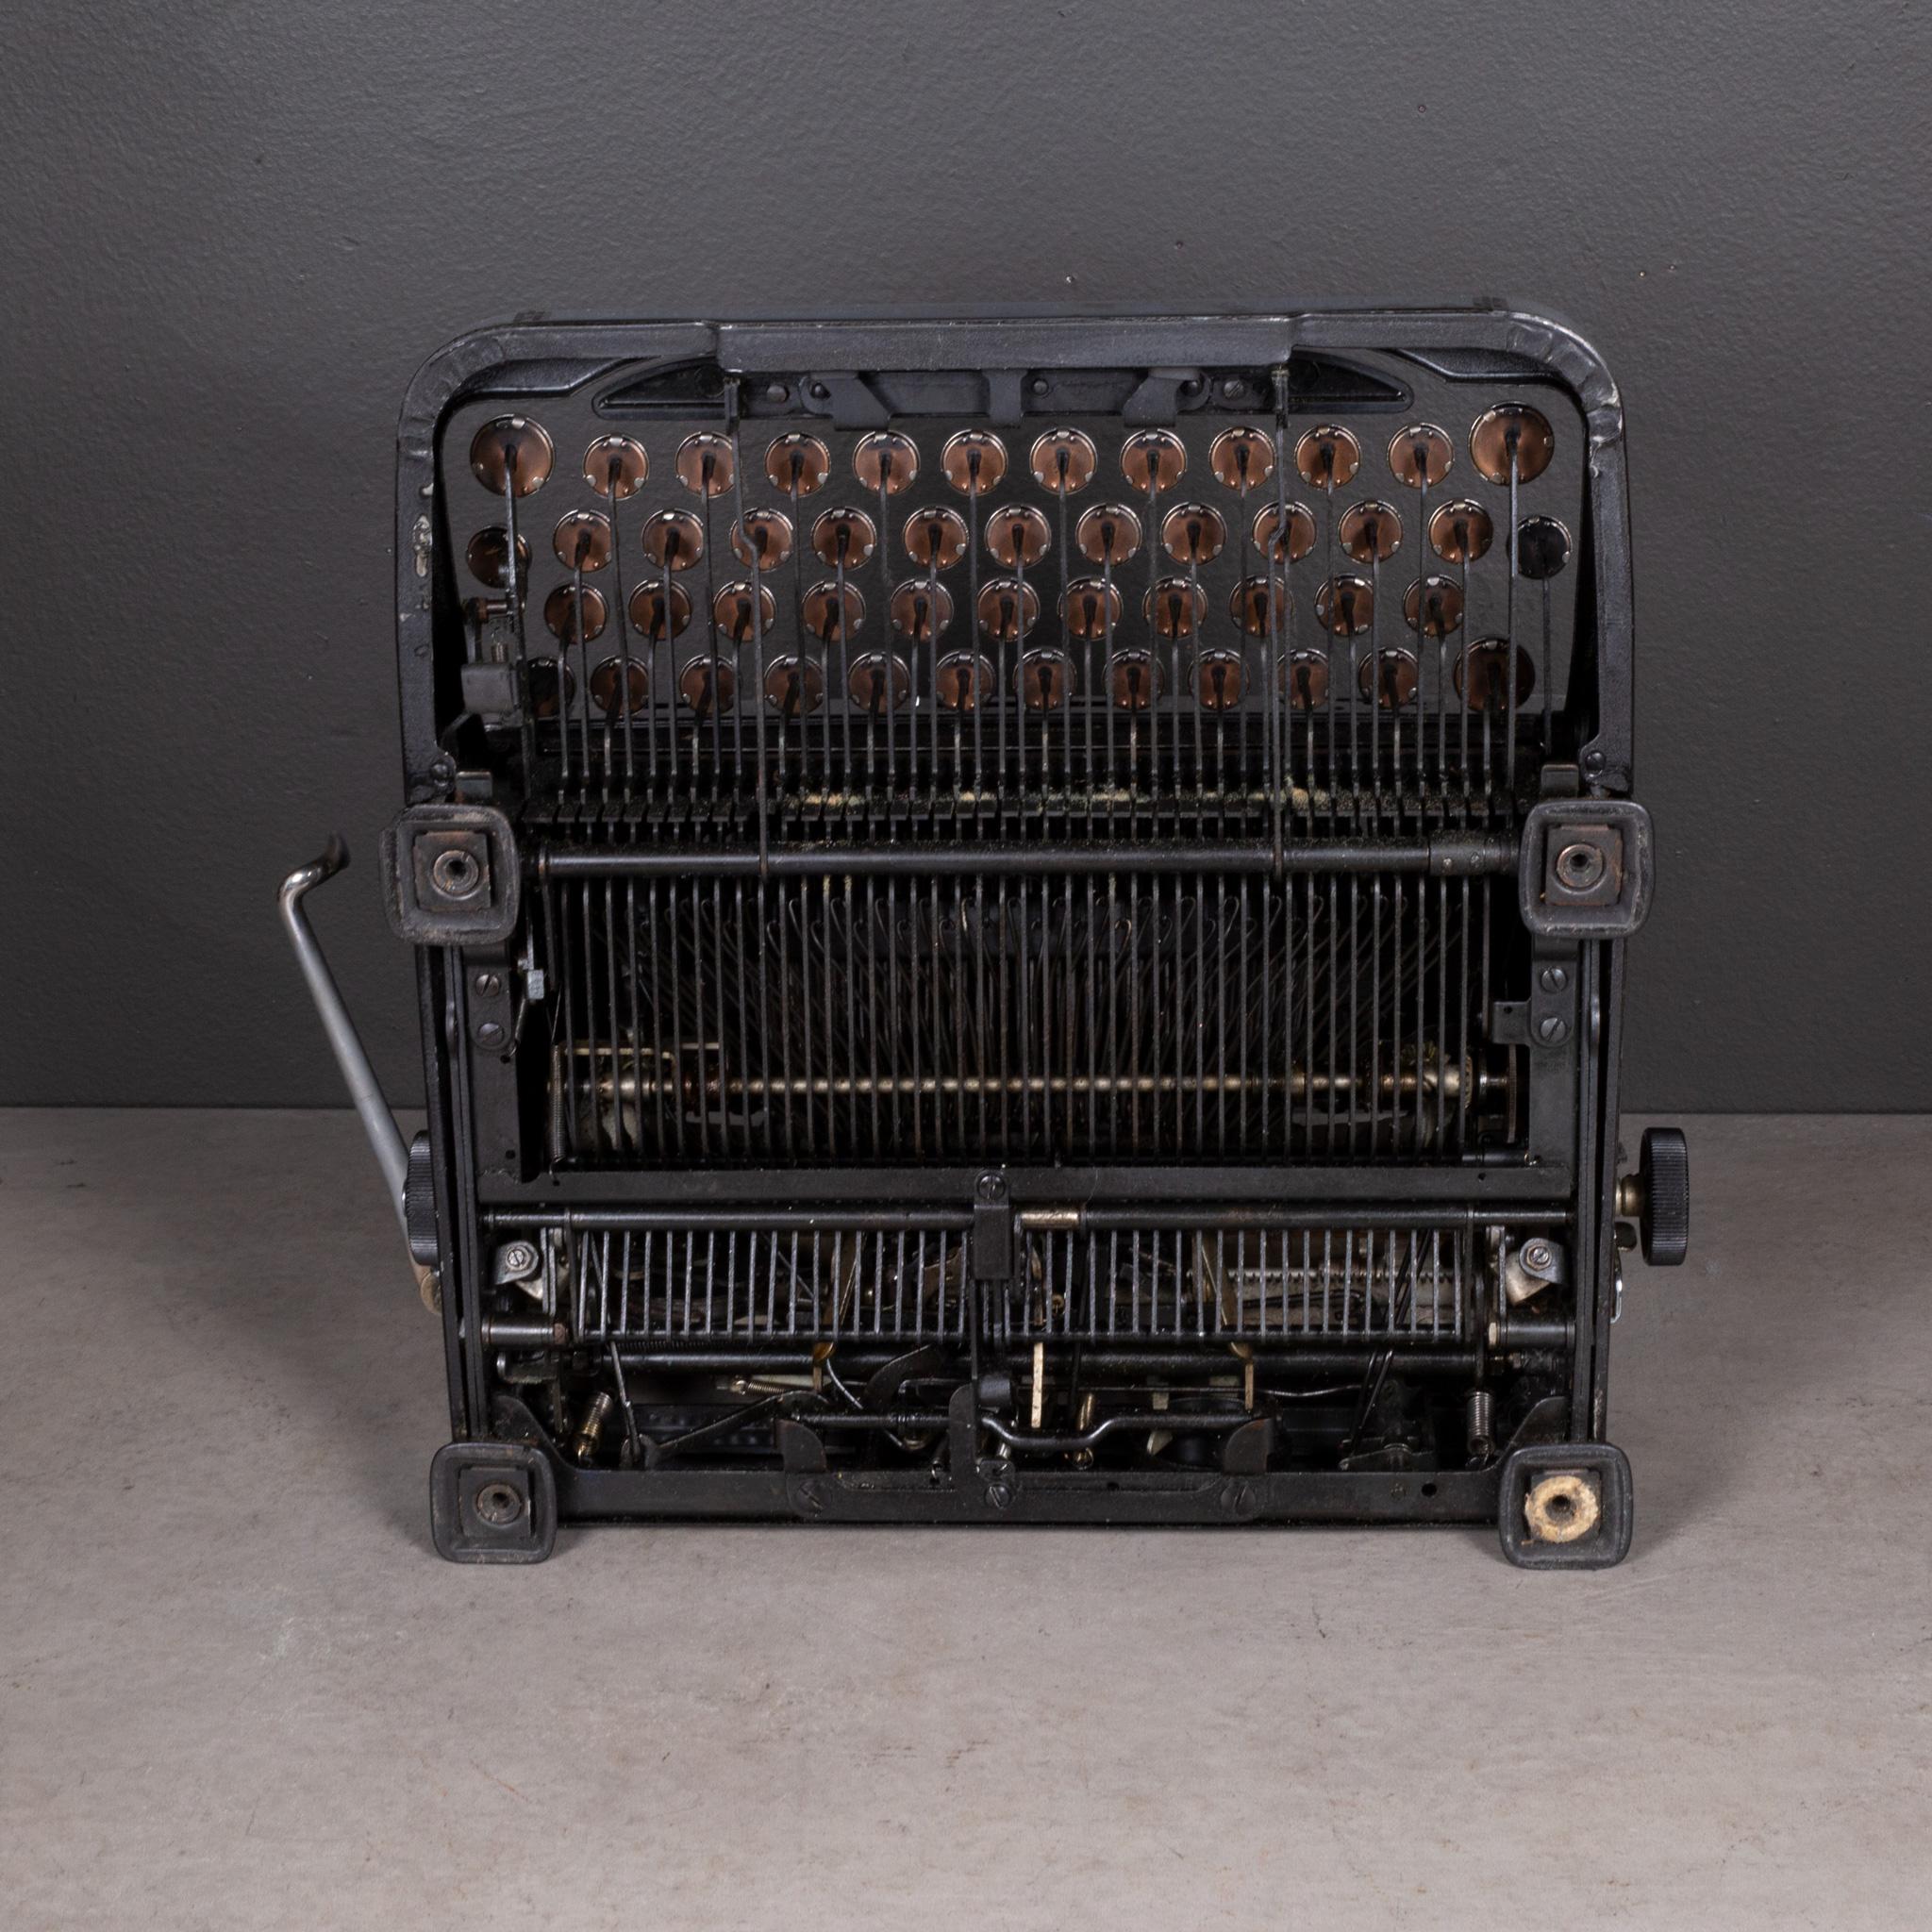 Antique Art Deco Royal Portable Typewriter c.1935 2